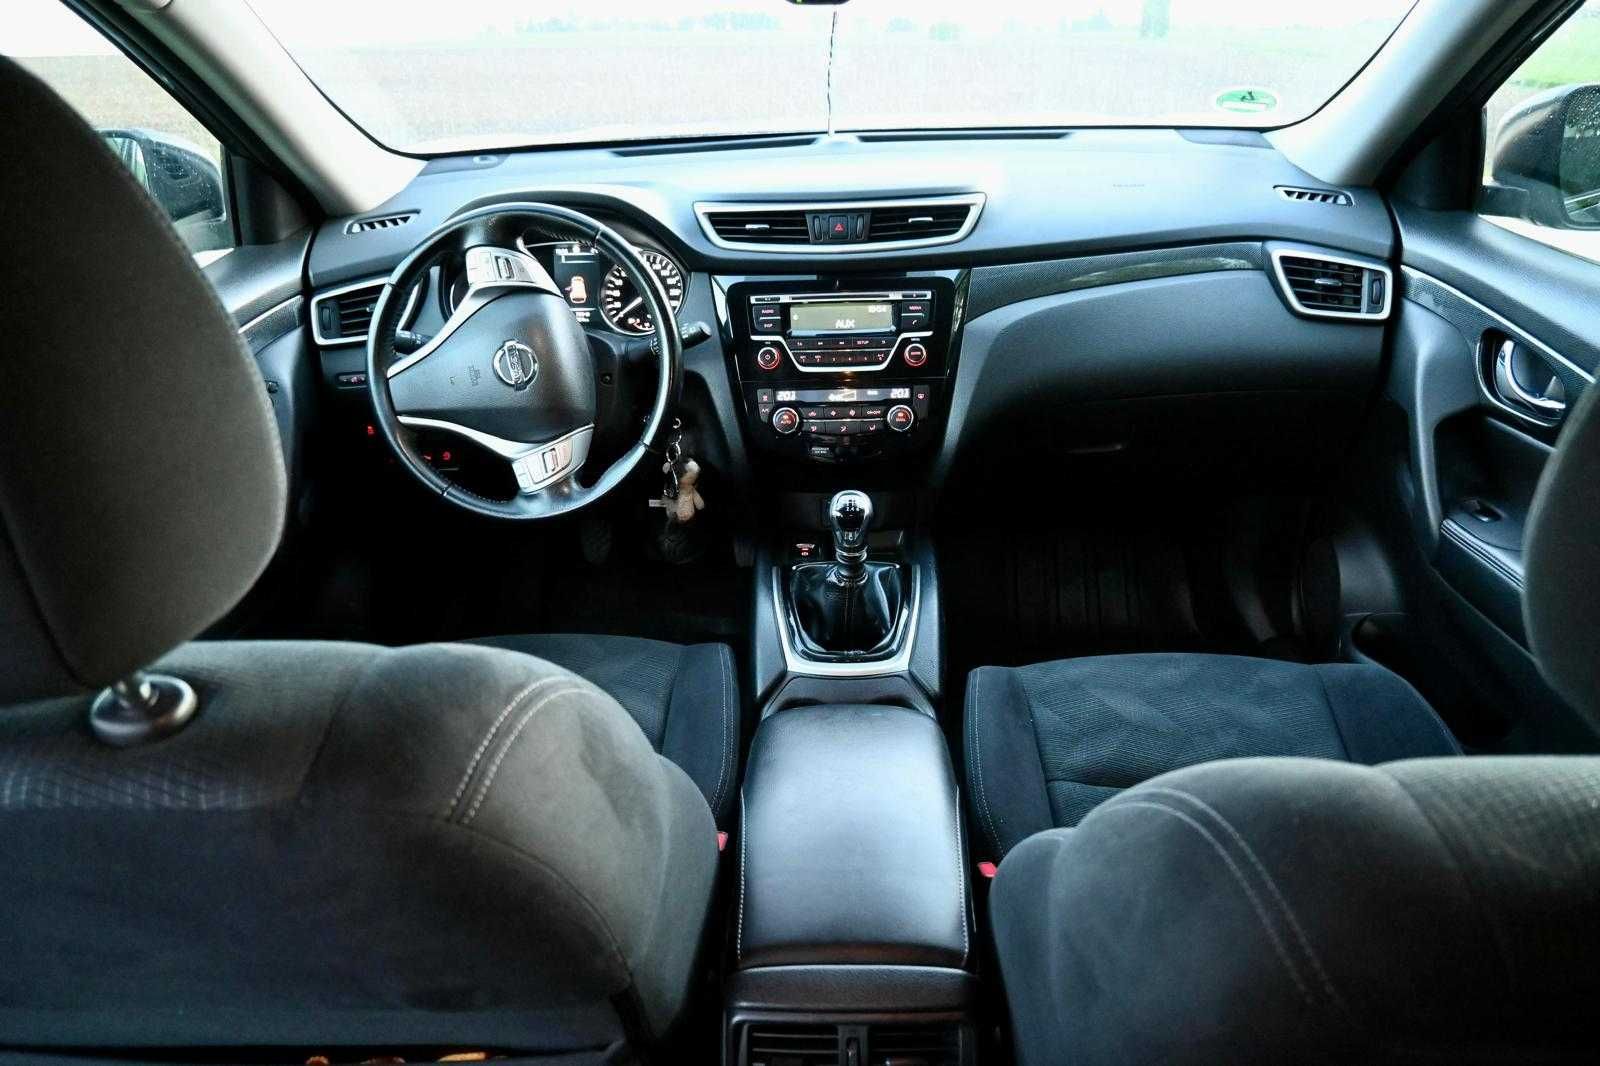 Autoturism Nissan XTRAIL